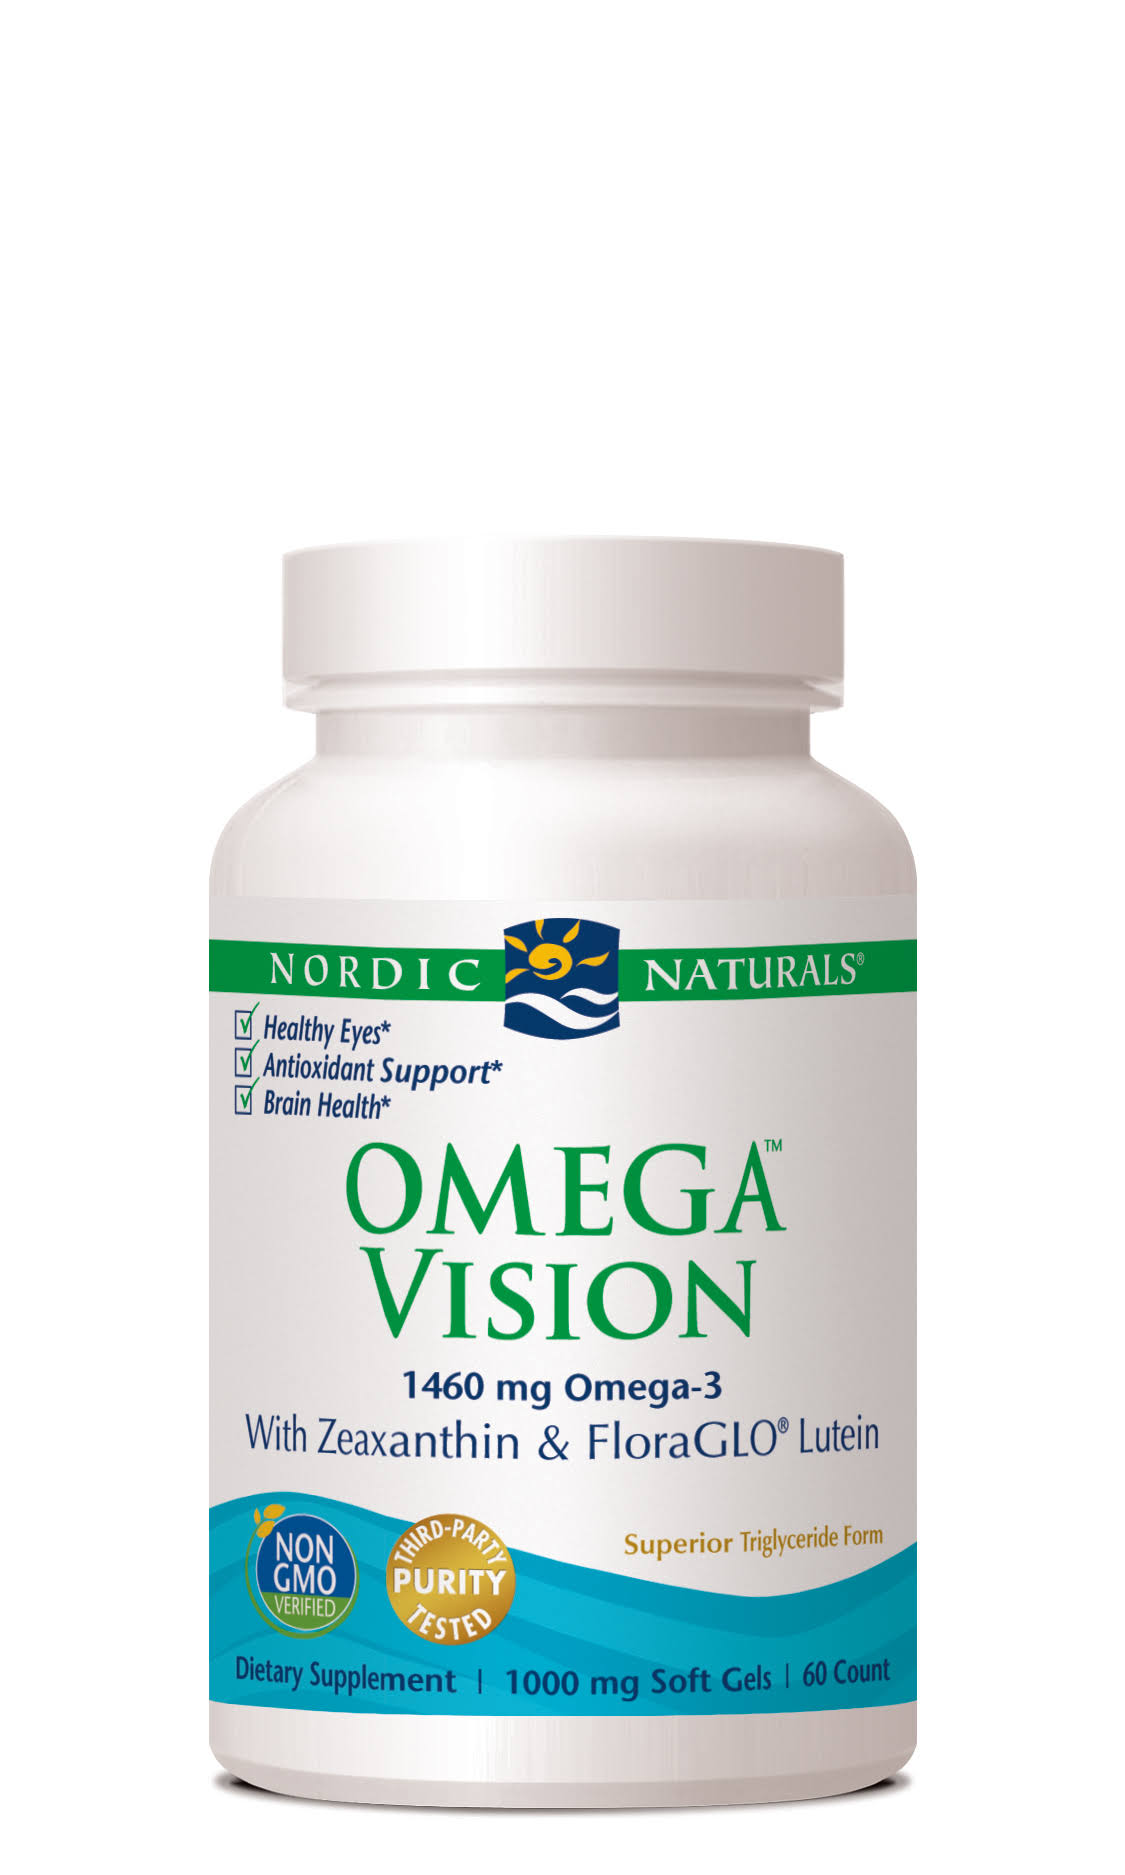 Nordic Naturals Omega Vision - 60 Softgels